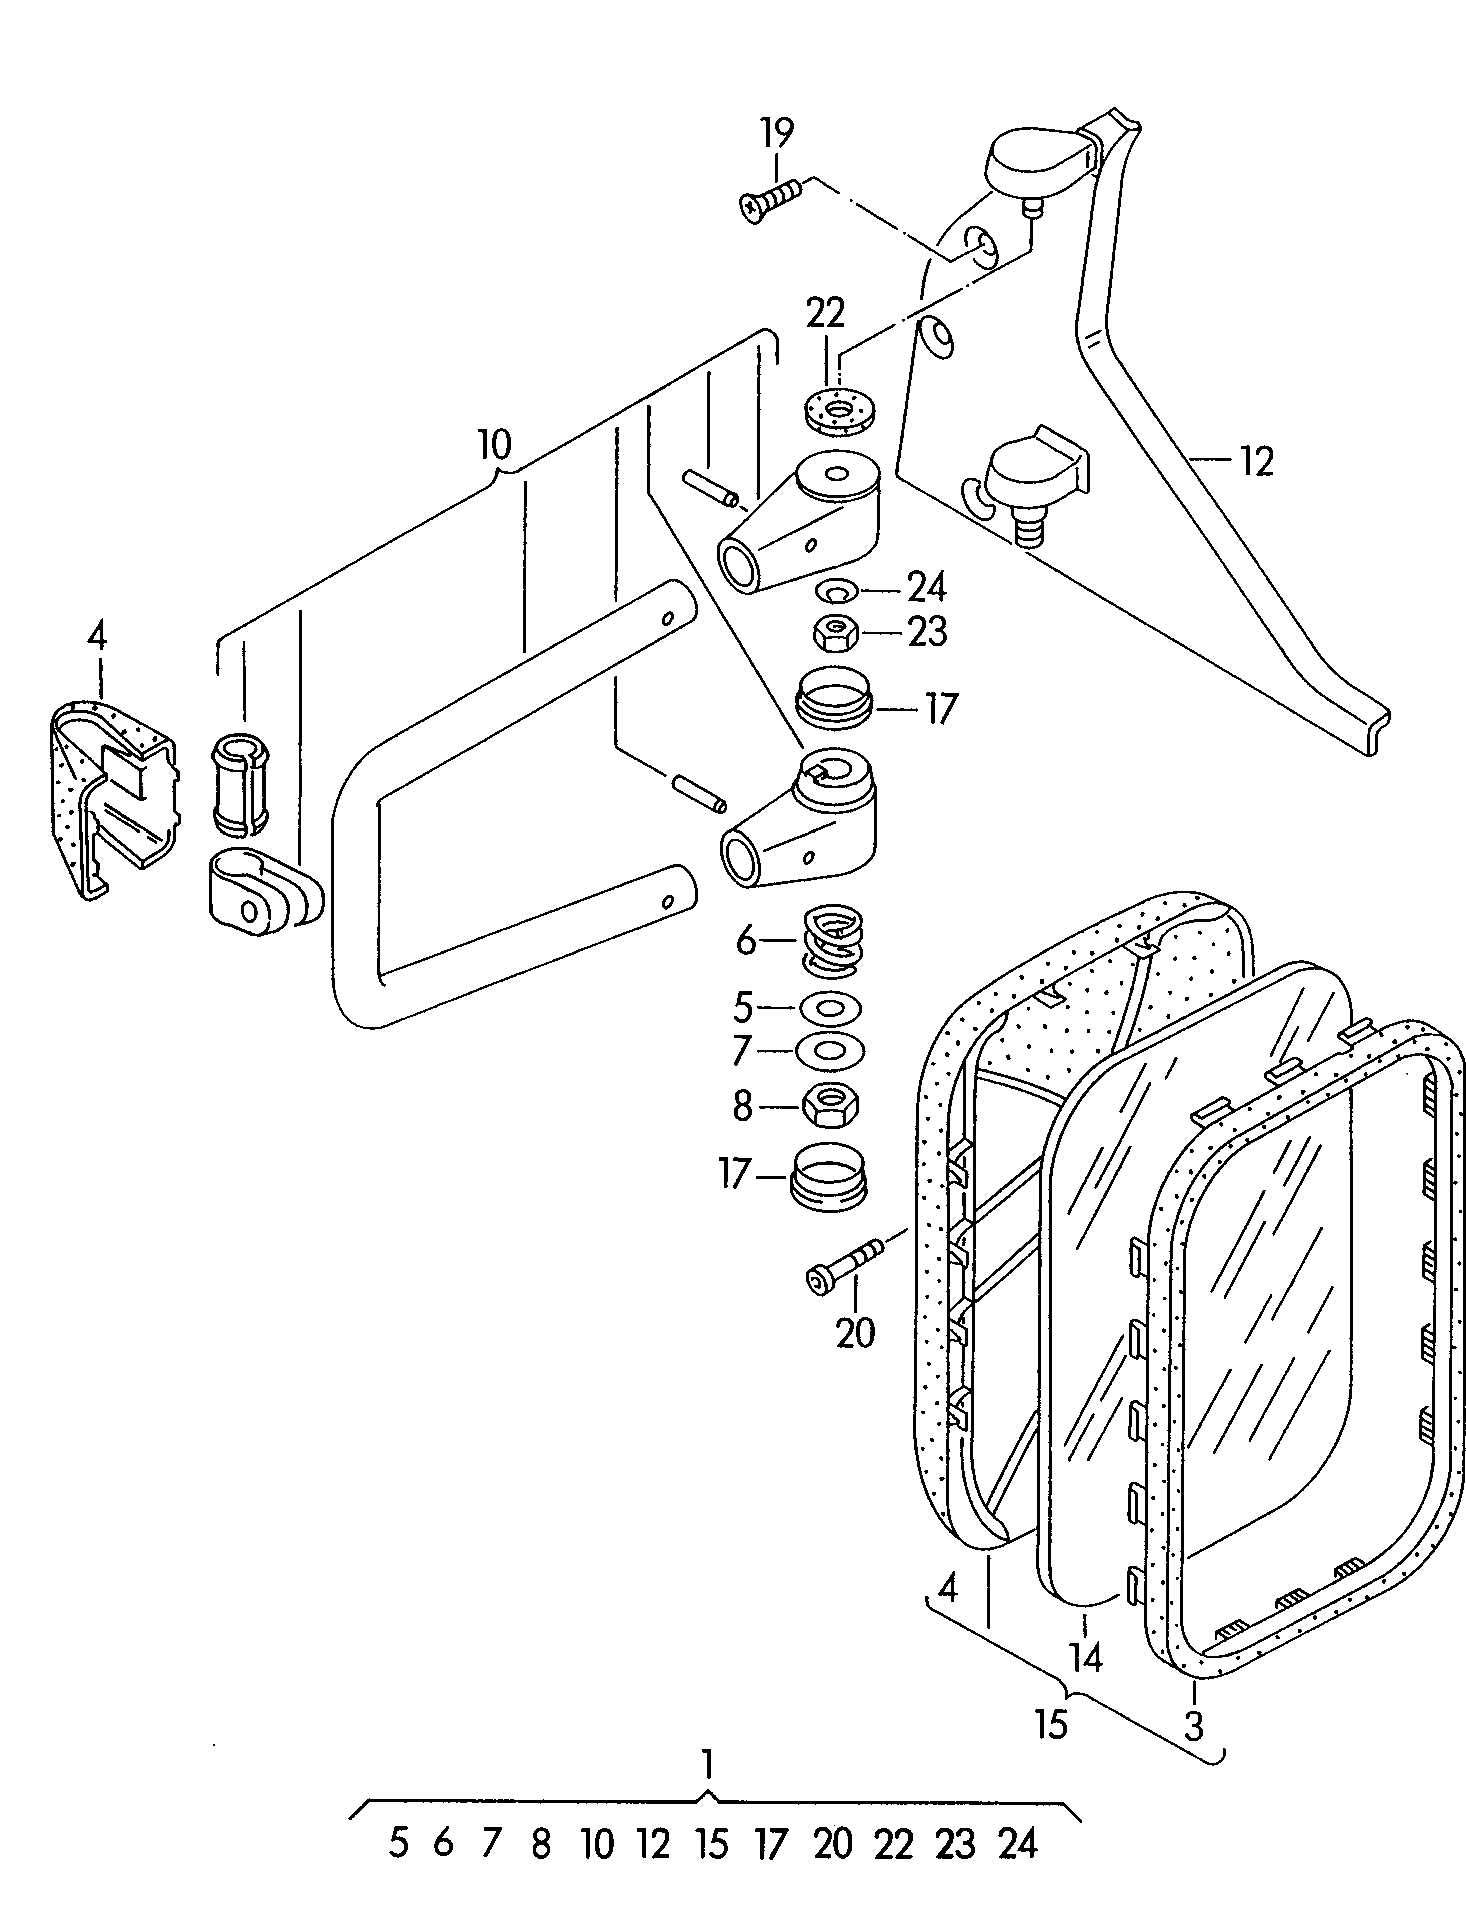 弓架式外后视镜 - Transporter(TR)  